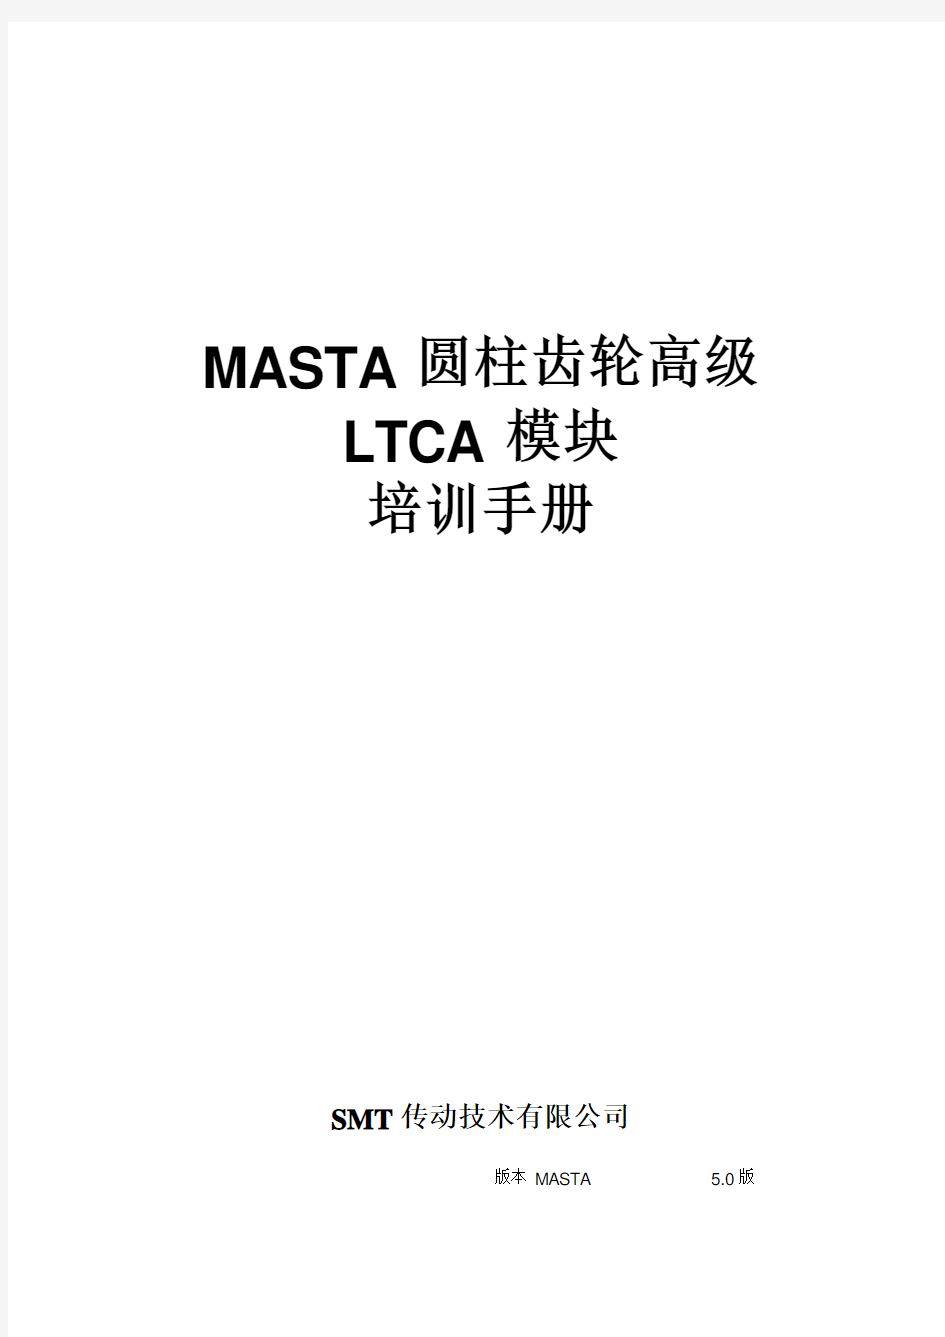 MASTA_圆柱齿轮高级LTCA培训手册介绍